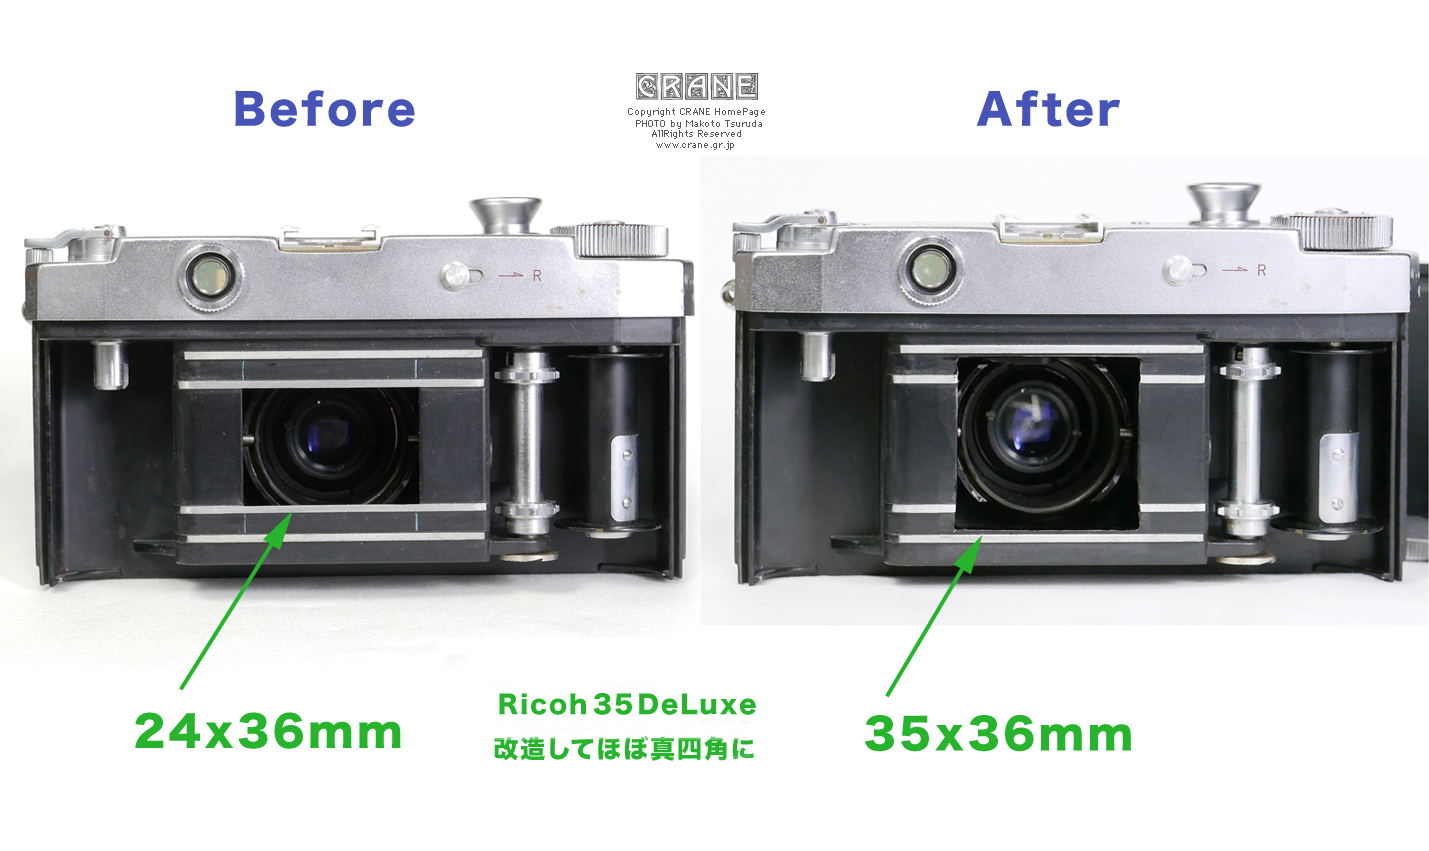 CRANE/私的素敵頁 拡張フォーマット改造カメラ Ricoh 35 DeLuxe 広く